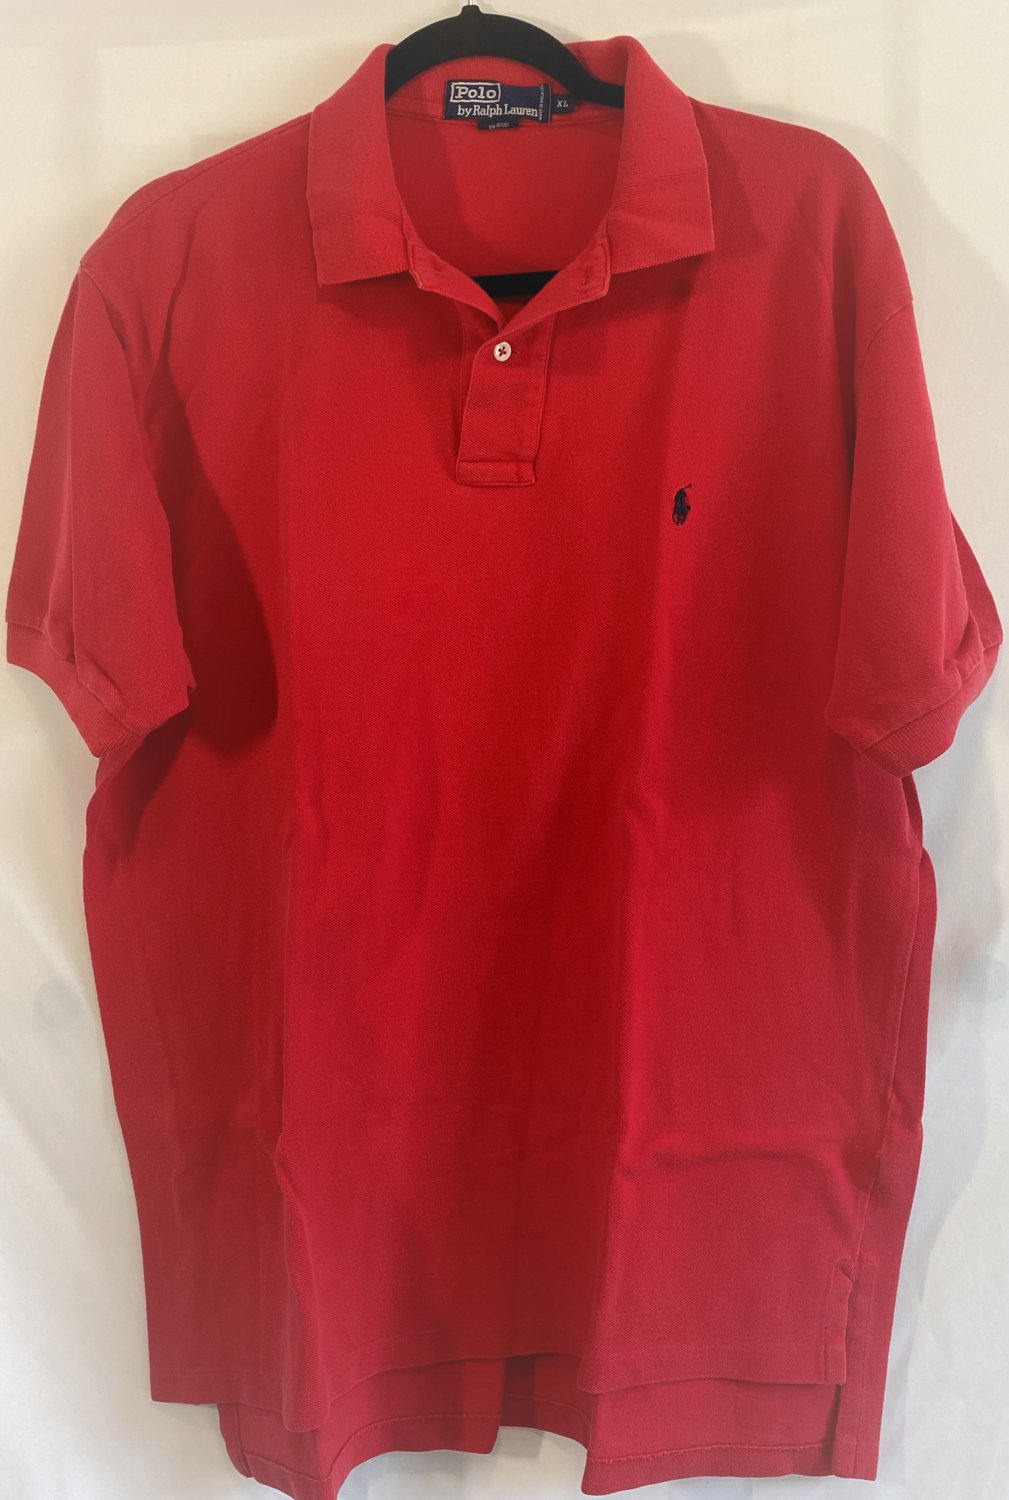 Men's Polo Ralph Lauren Size XL Red Short Sleeve Polo Shirt